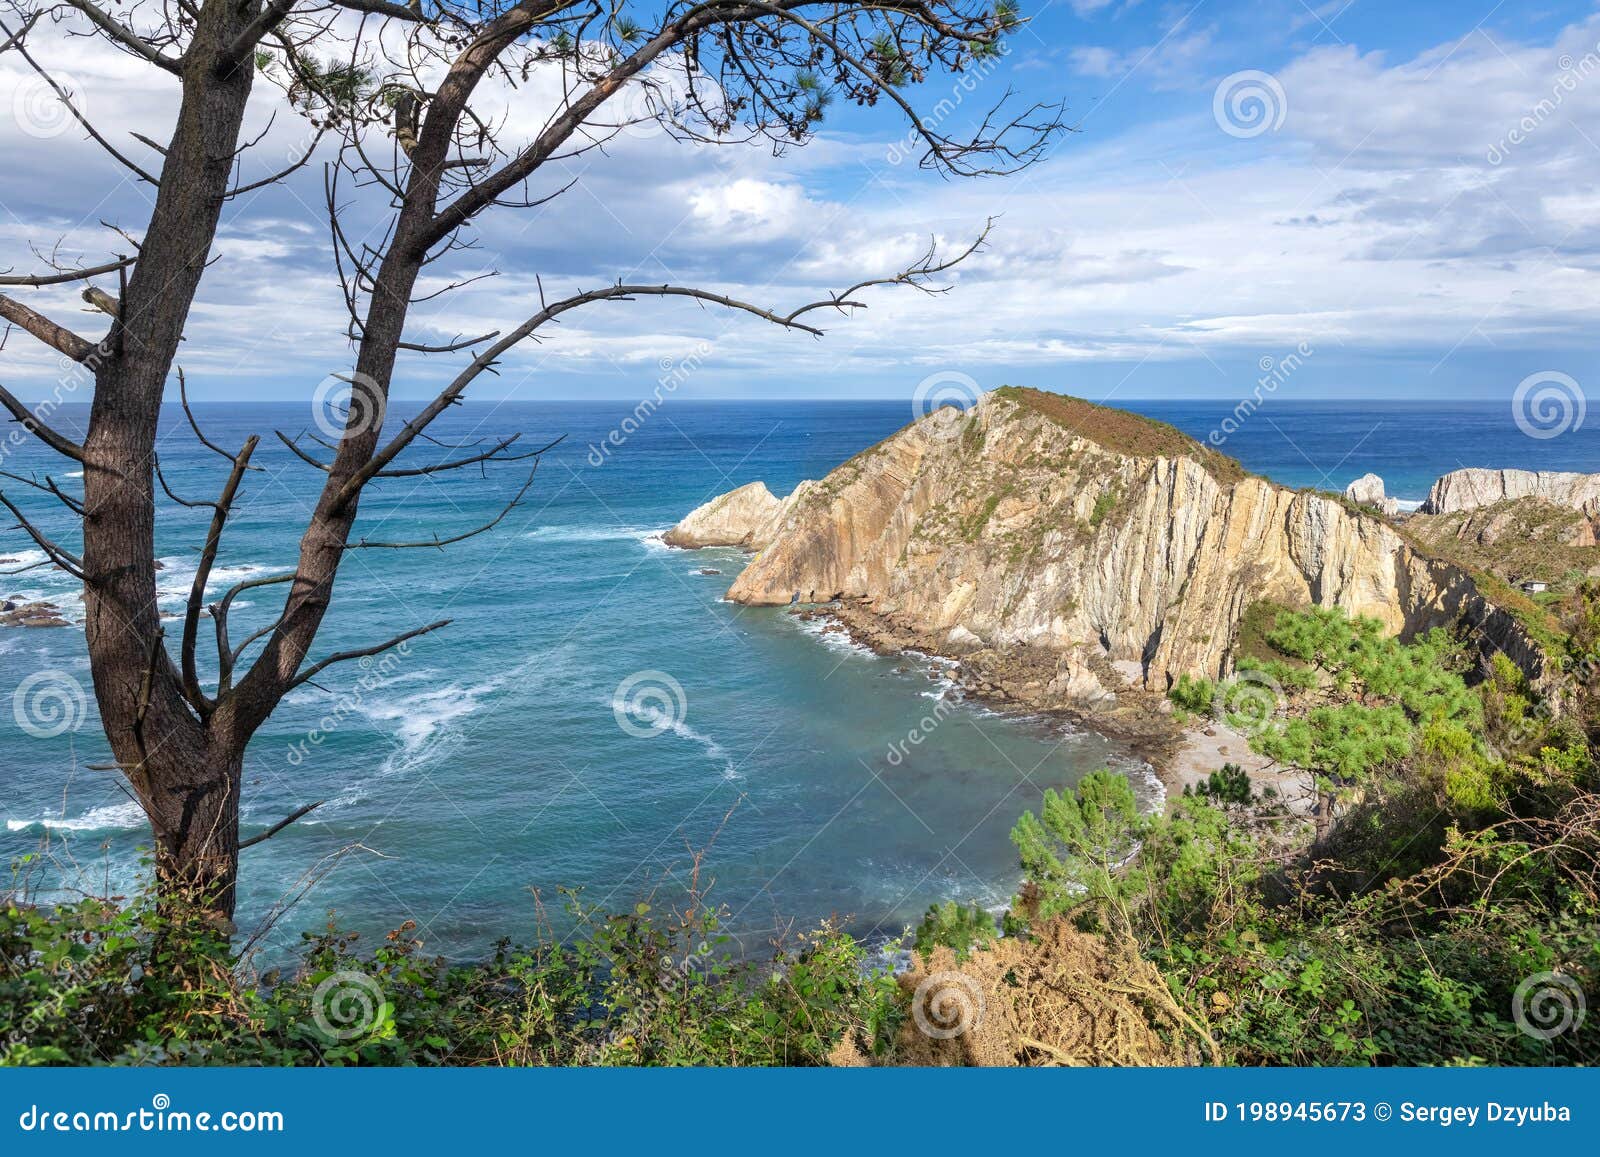 sea coast close to playa del silencio beach in asturias, spain